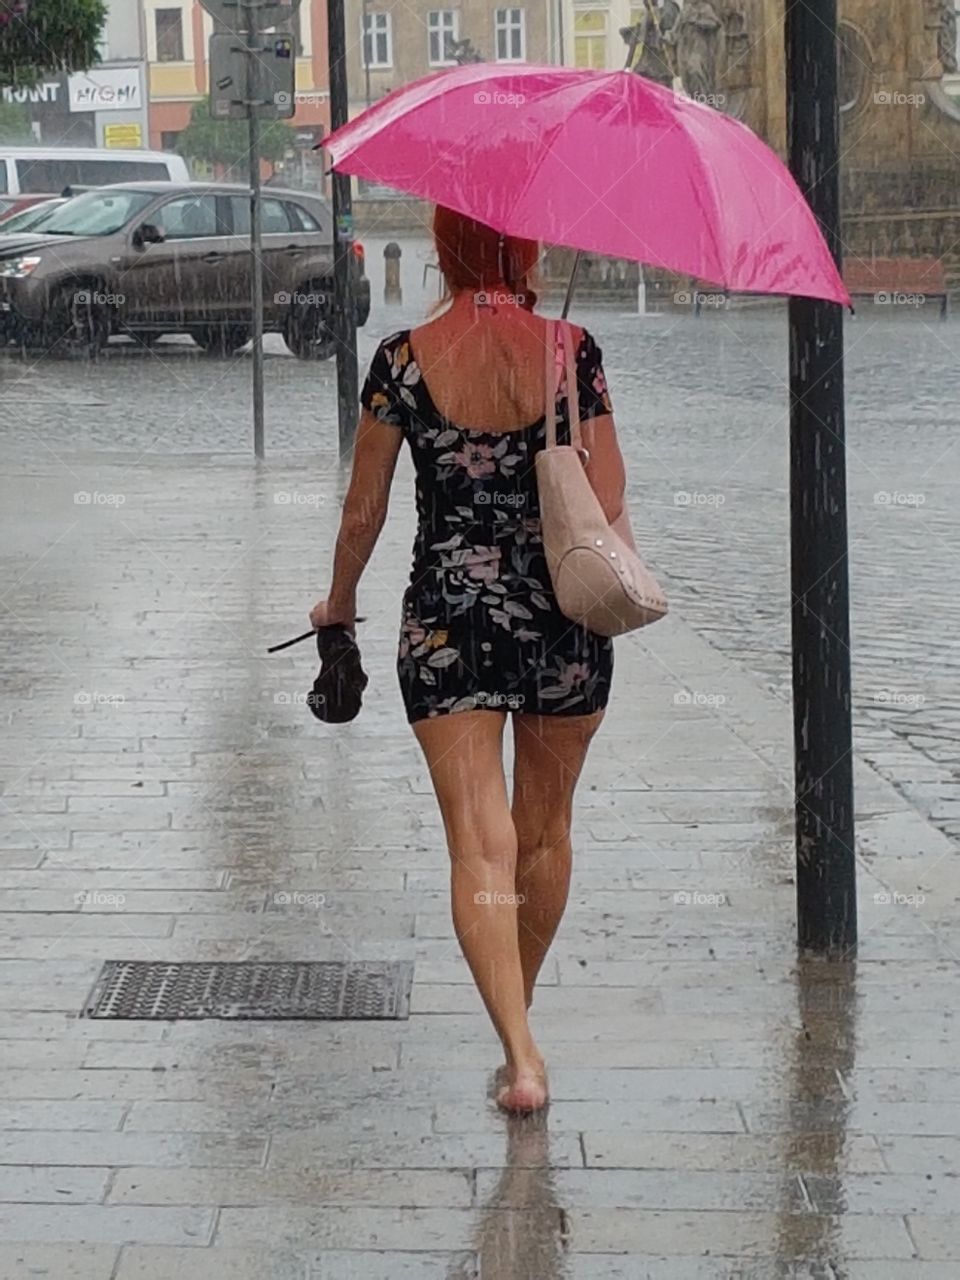 Rainy day in Olomouc